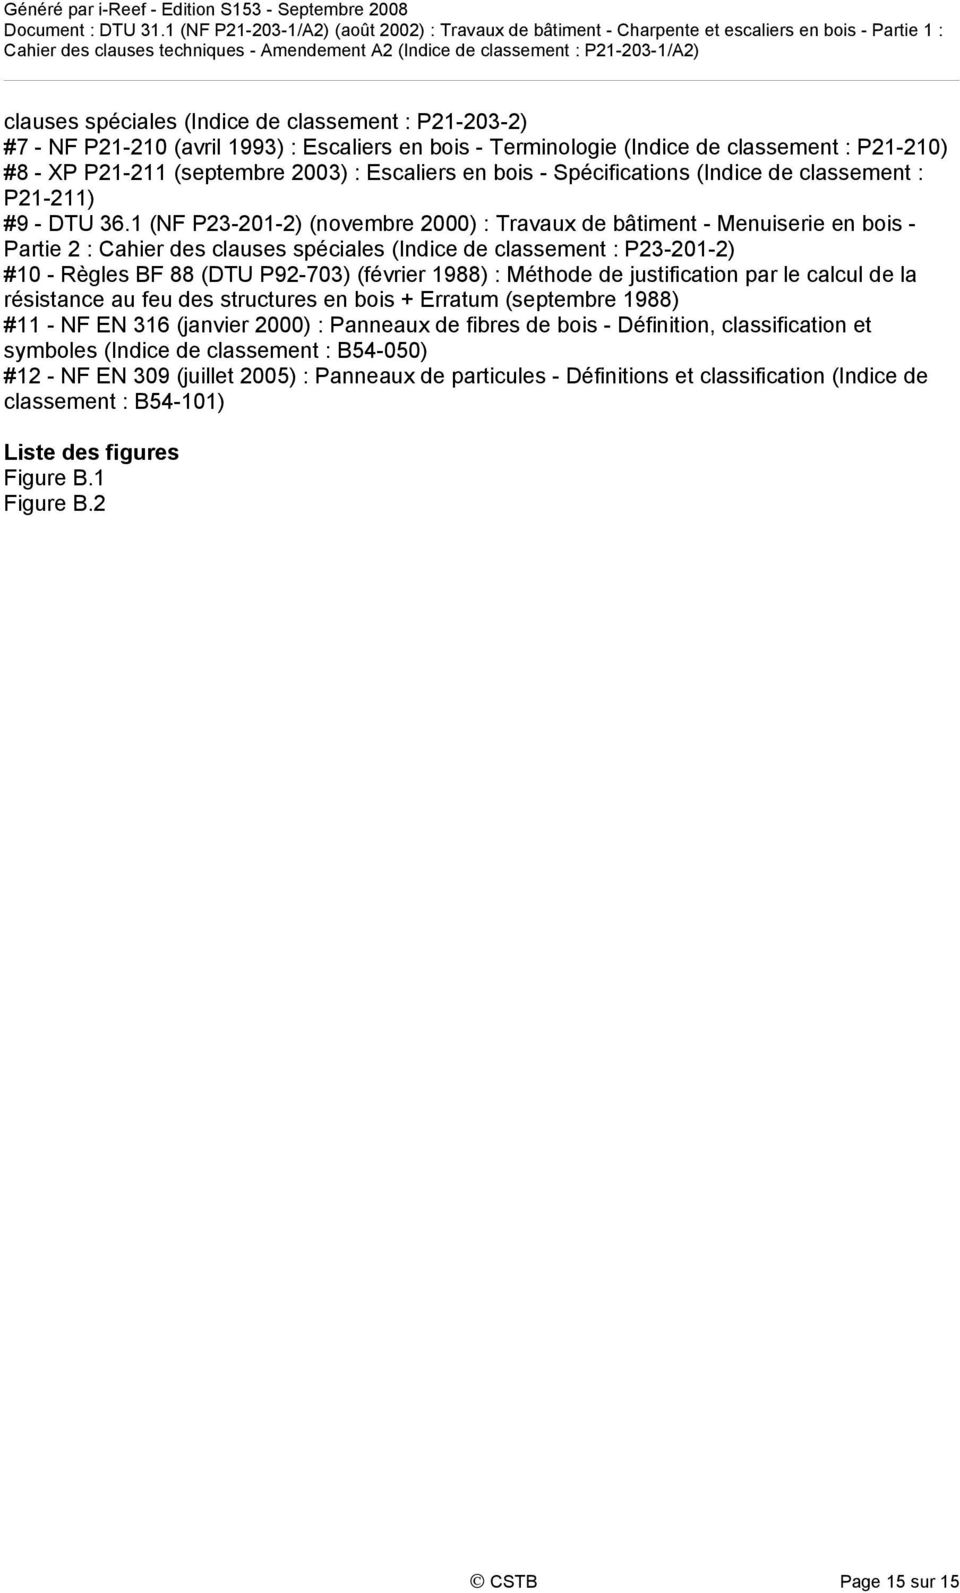 1 (NF P23-201-2) (novembre 2000) : Travaux de bâtiment - Menuiserie en bois - Partie 2 : Cahier des clauses spéciales (Indice de classement : P23-201-2) #10 - Règles BF 88 (DTU P92-703) (février